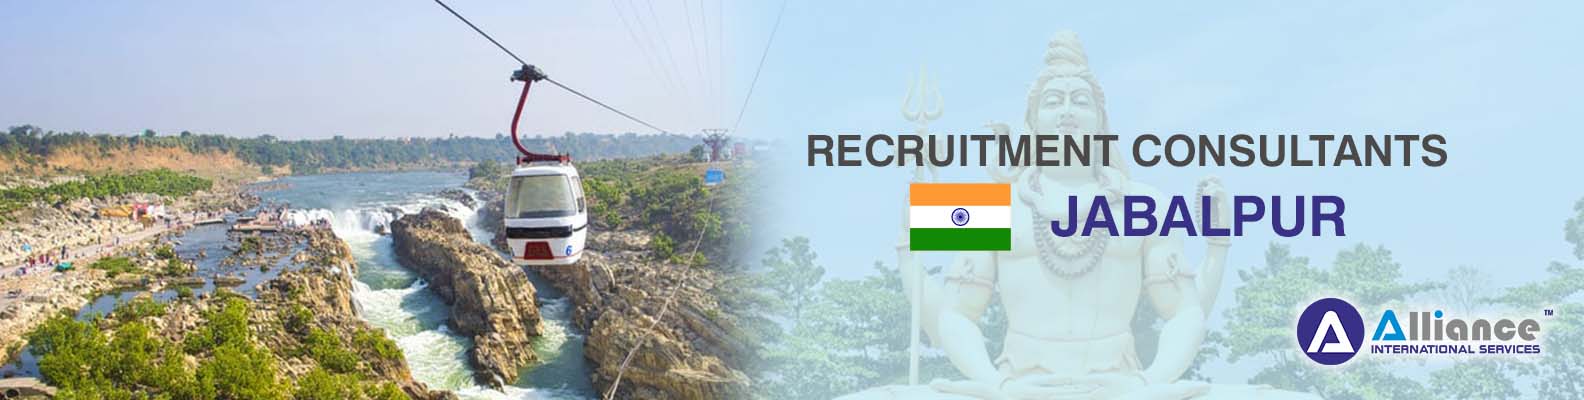 Recruitment Consultants Jabalpur